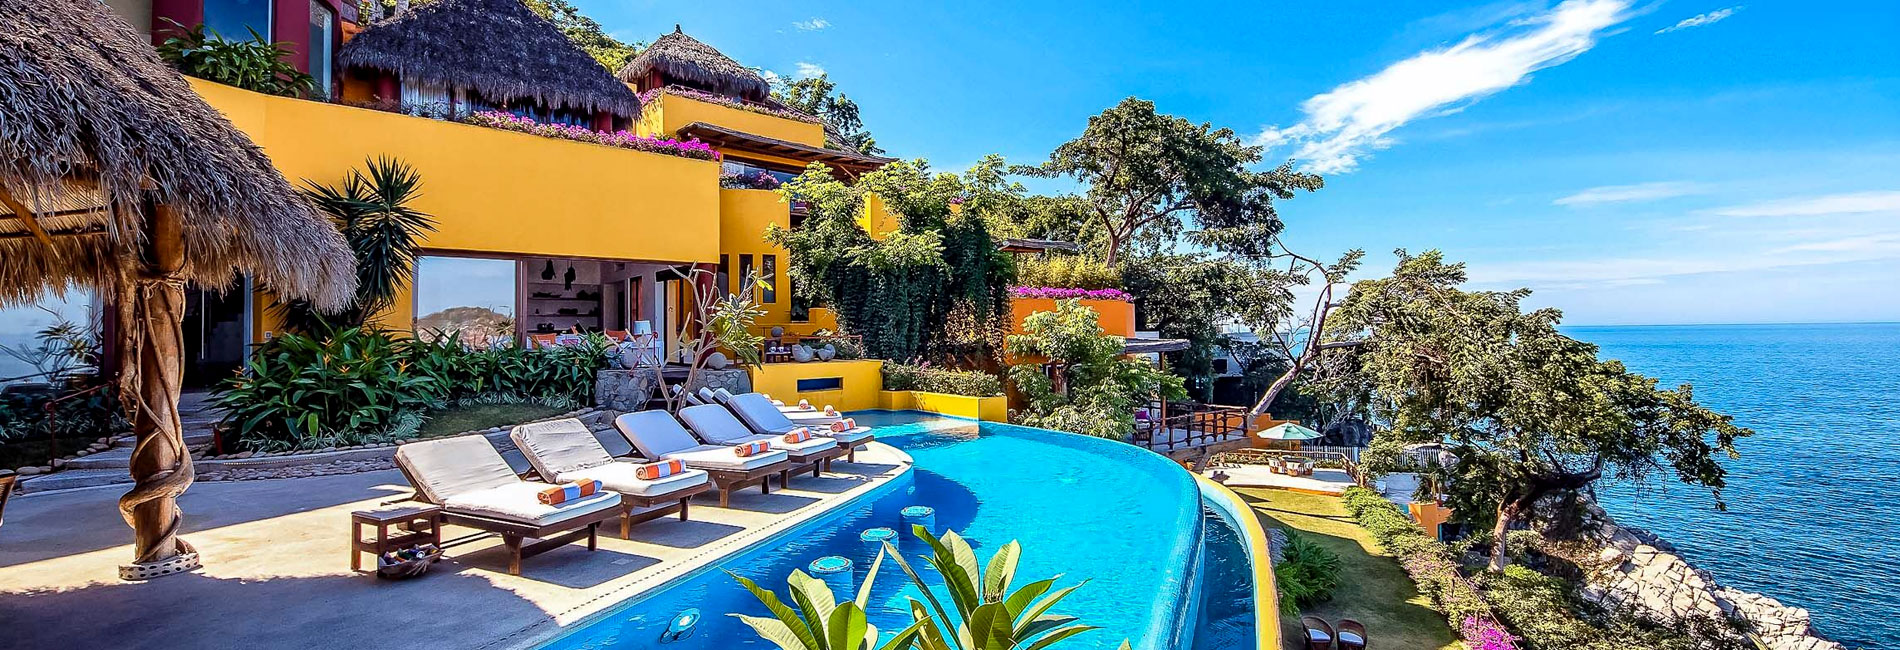 luxury-villas-mexico